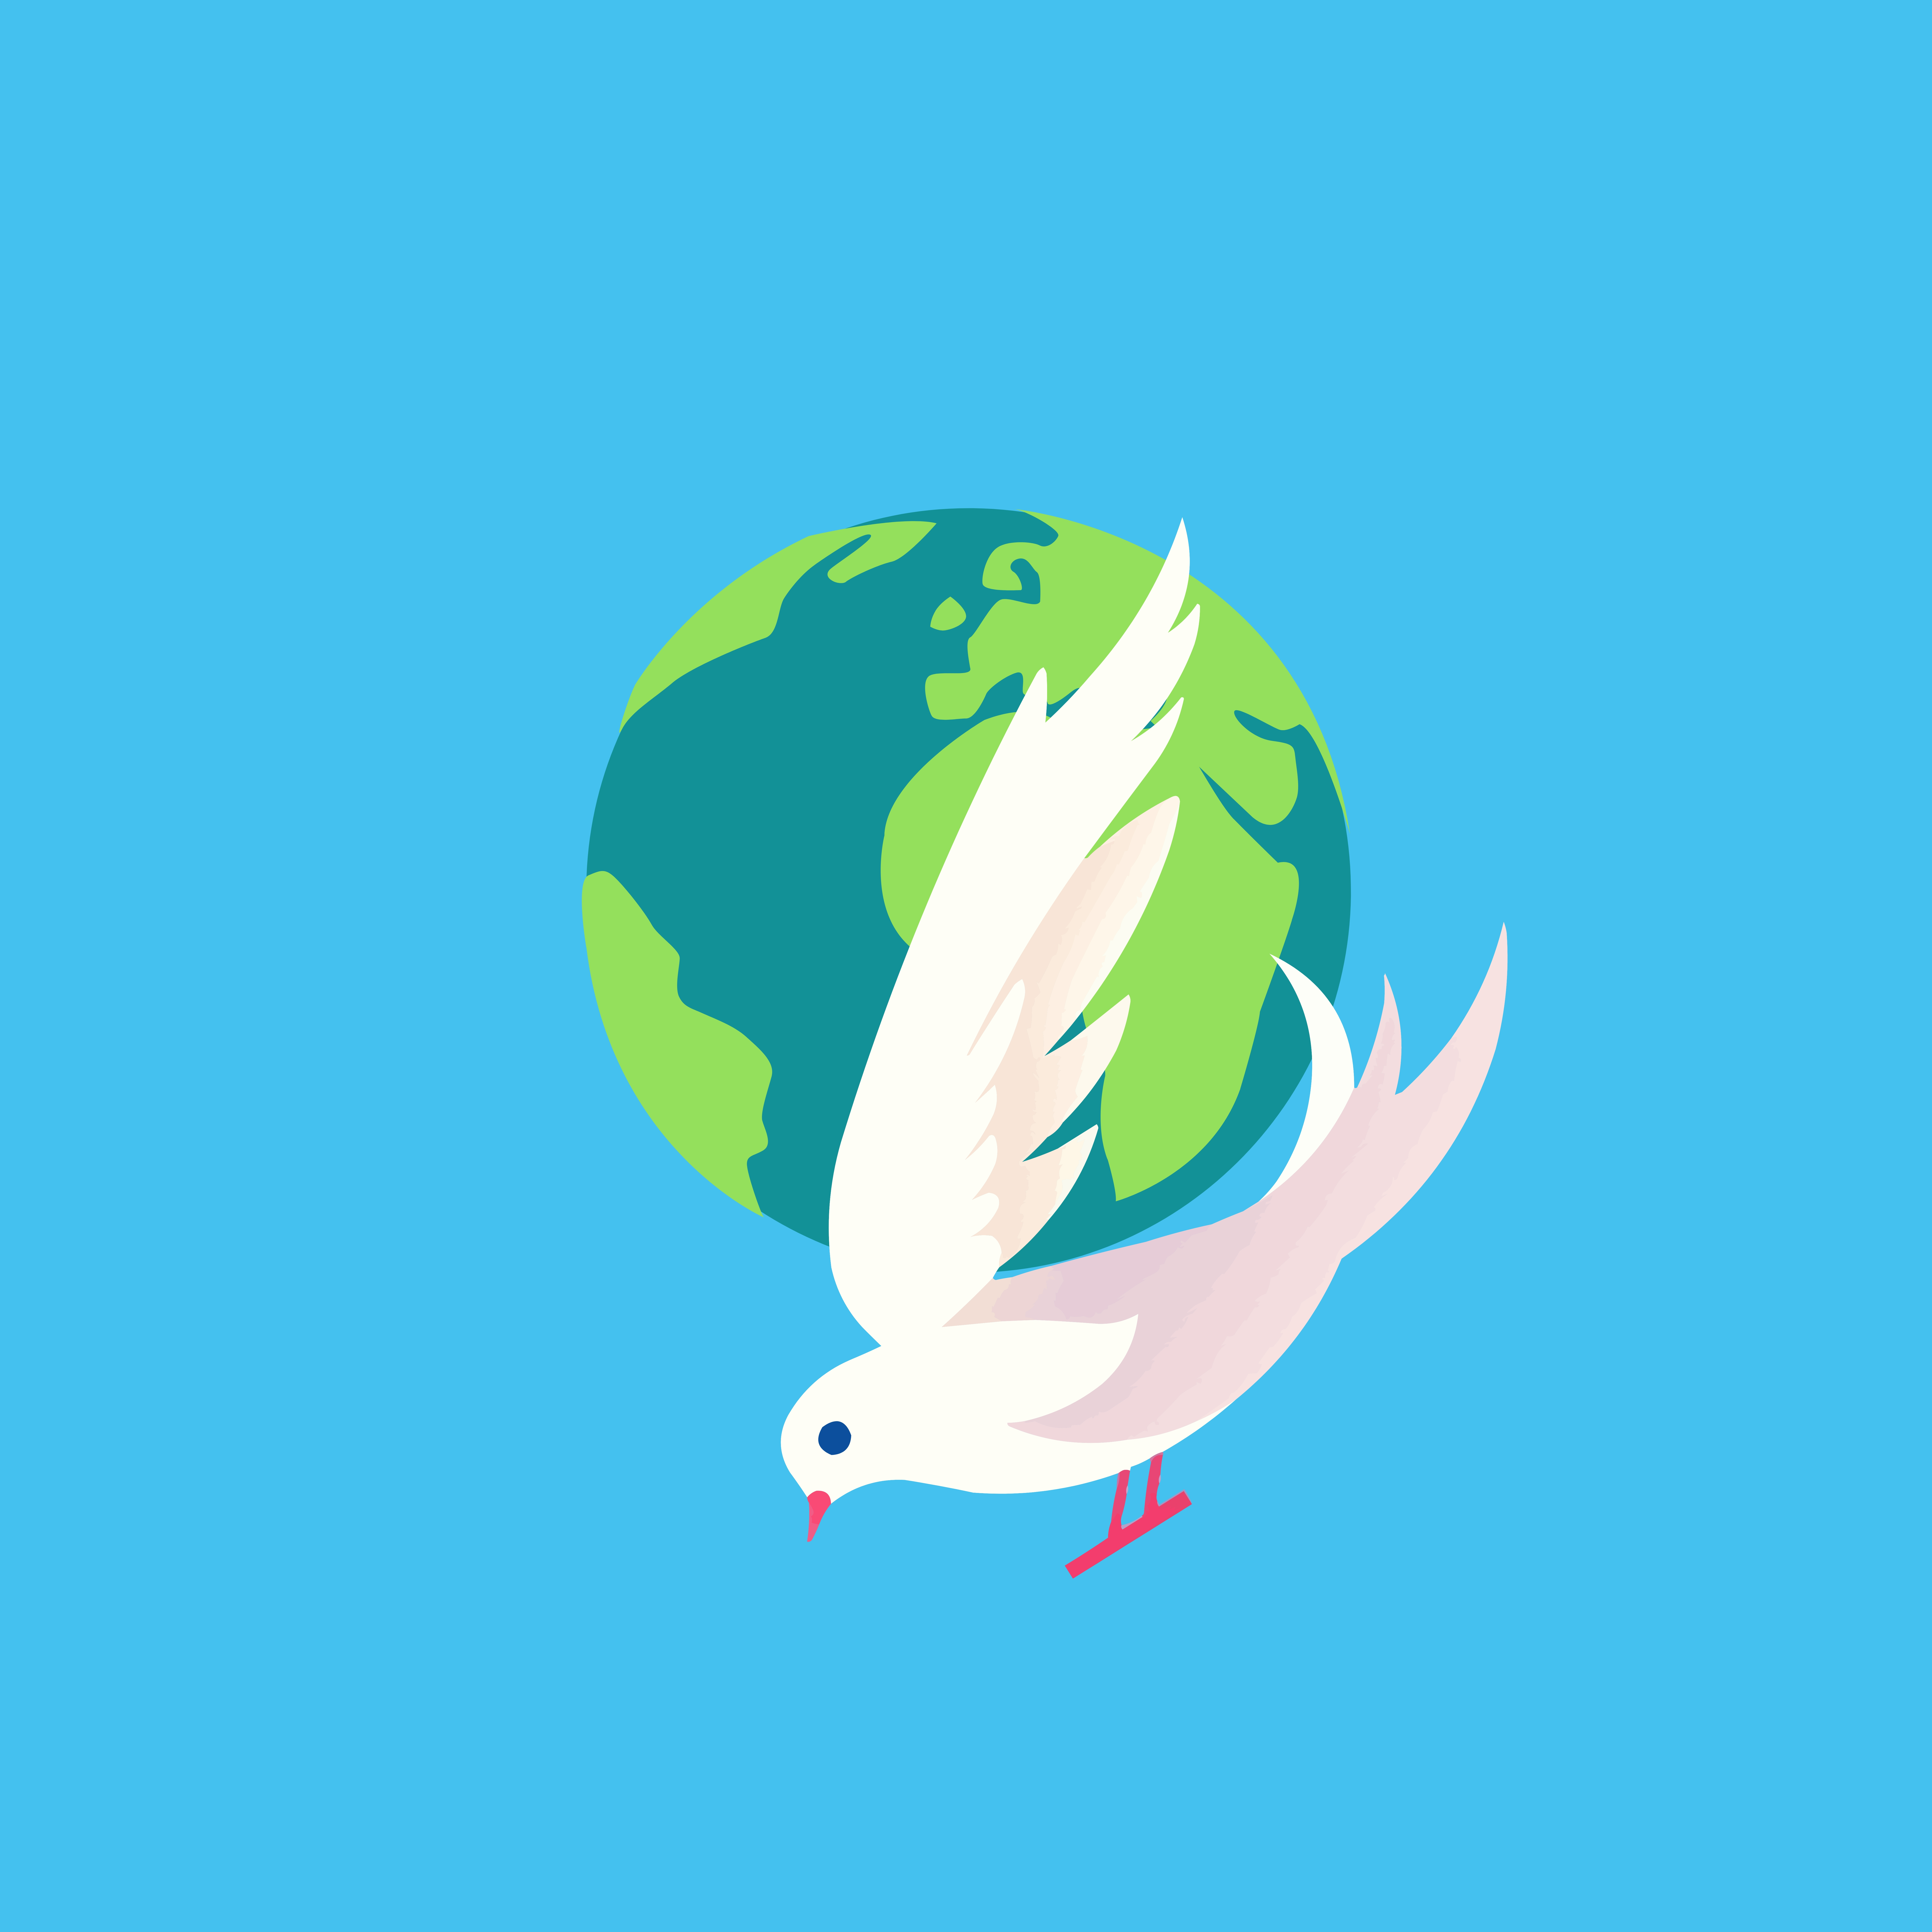 World peace graphic design